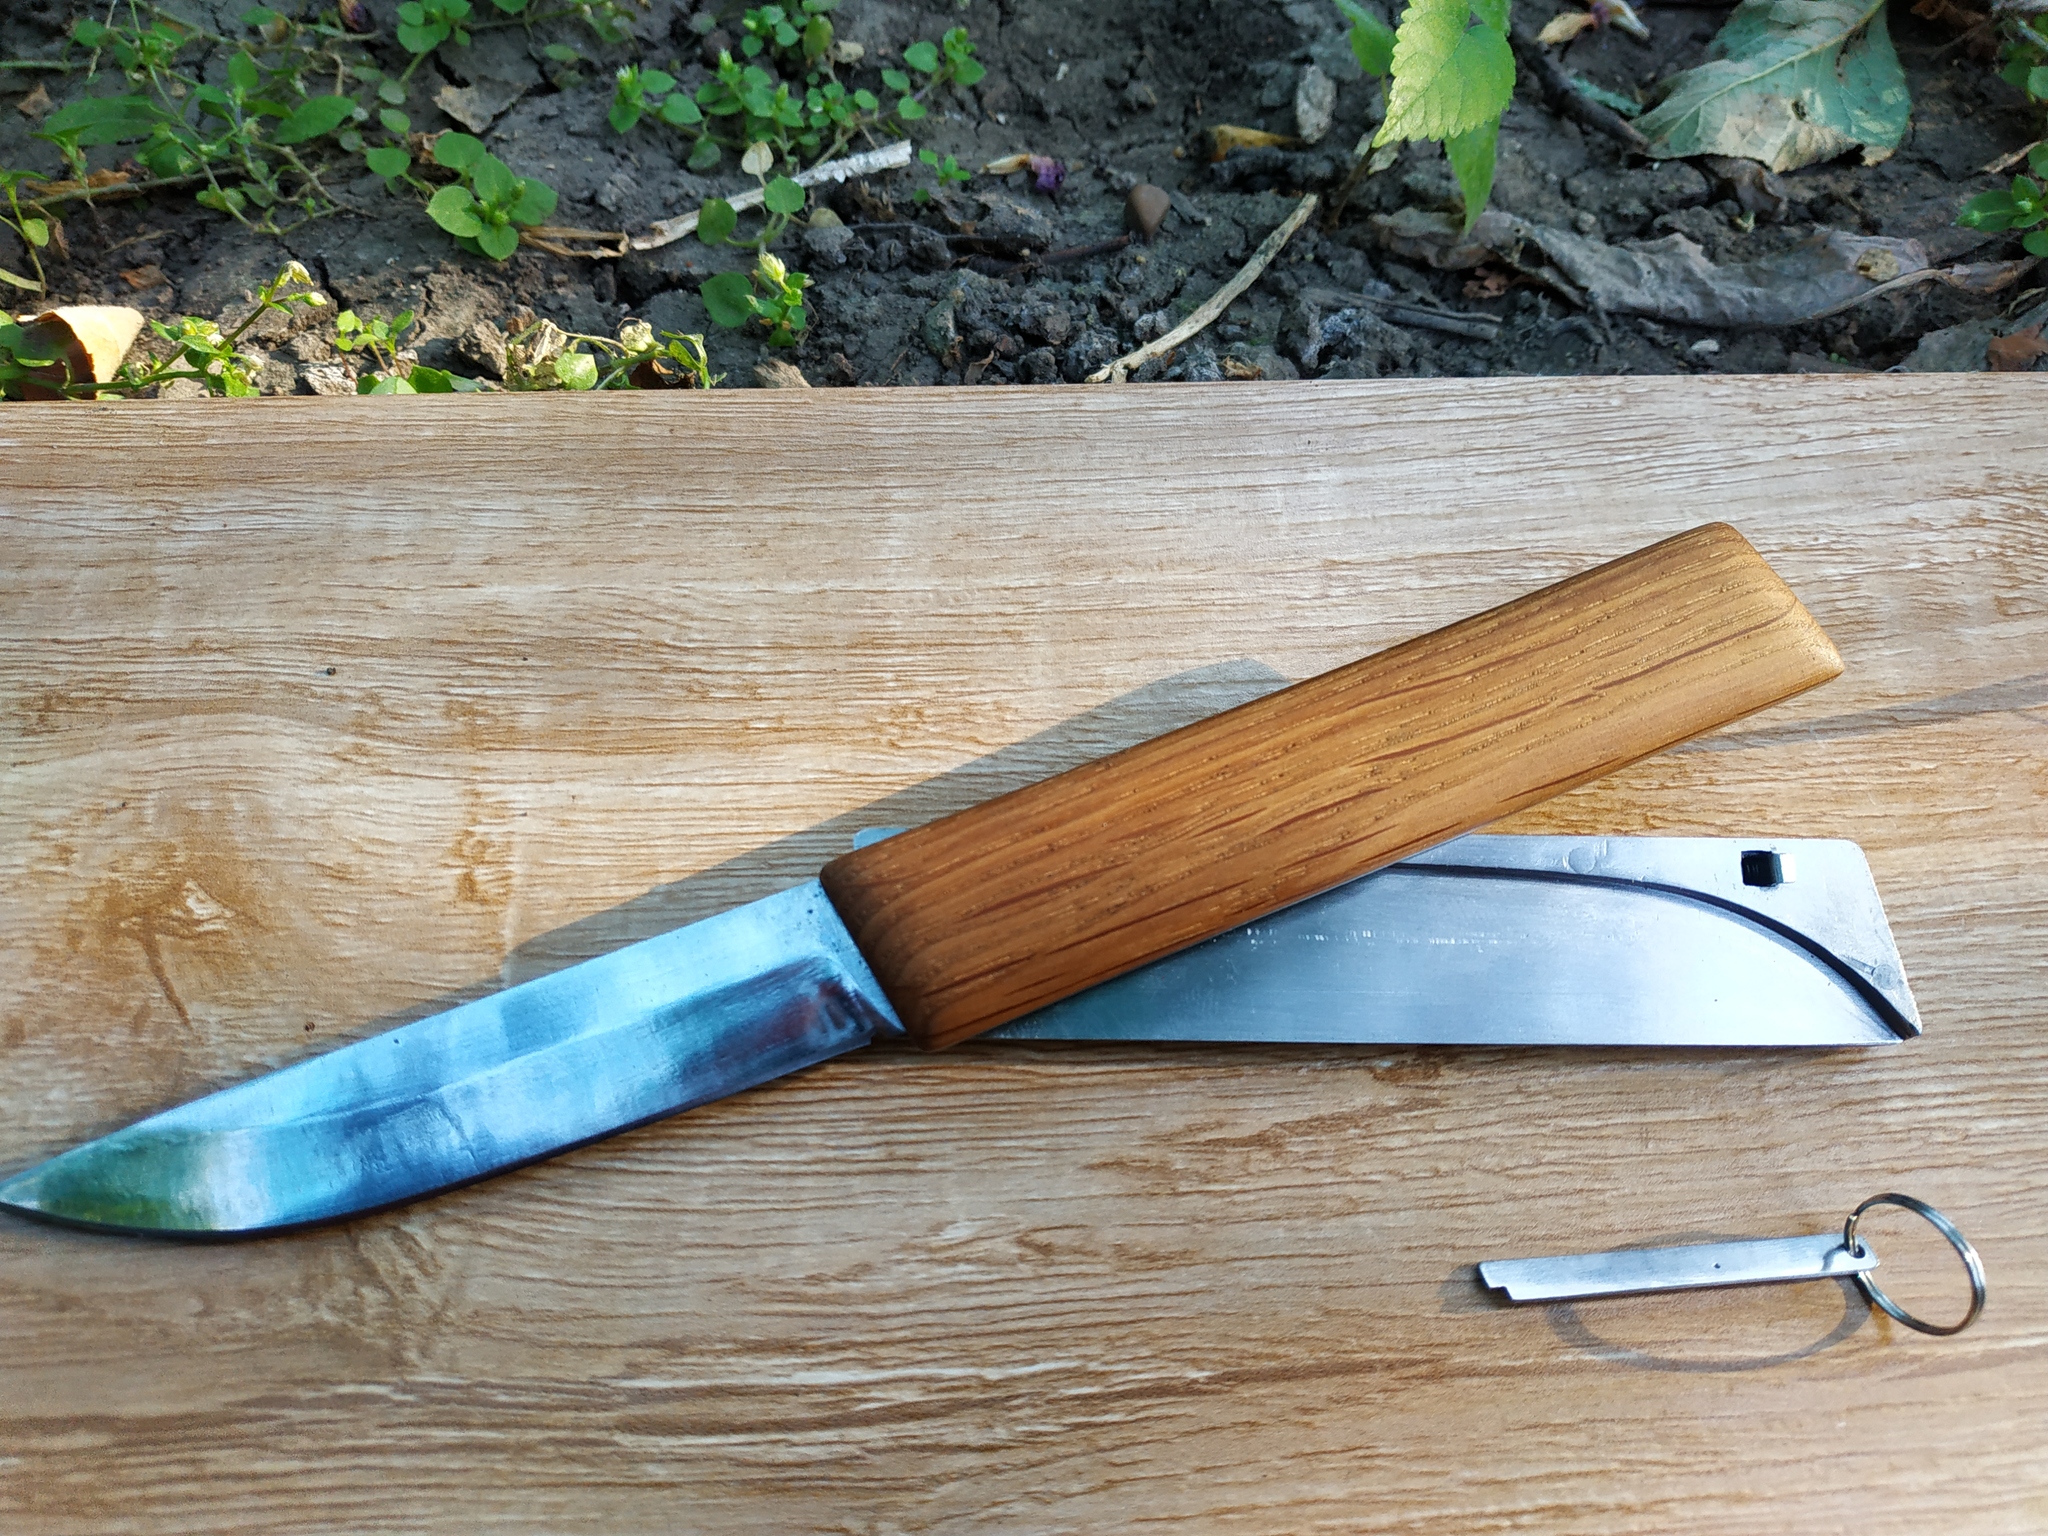  нож своими руками: Как из старых ножниц сделать складной нож